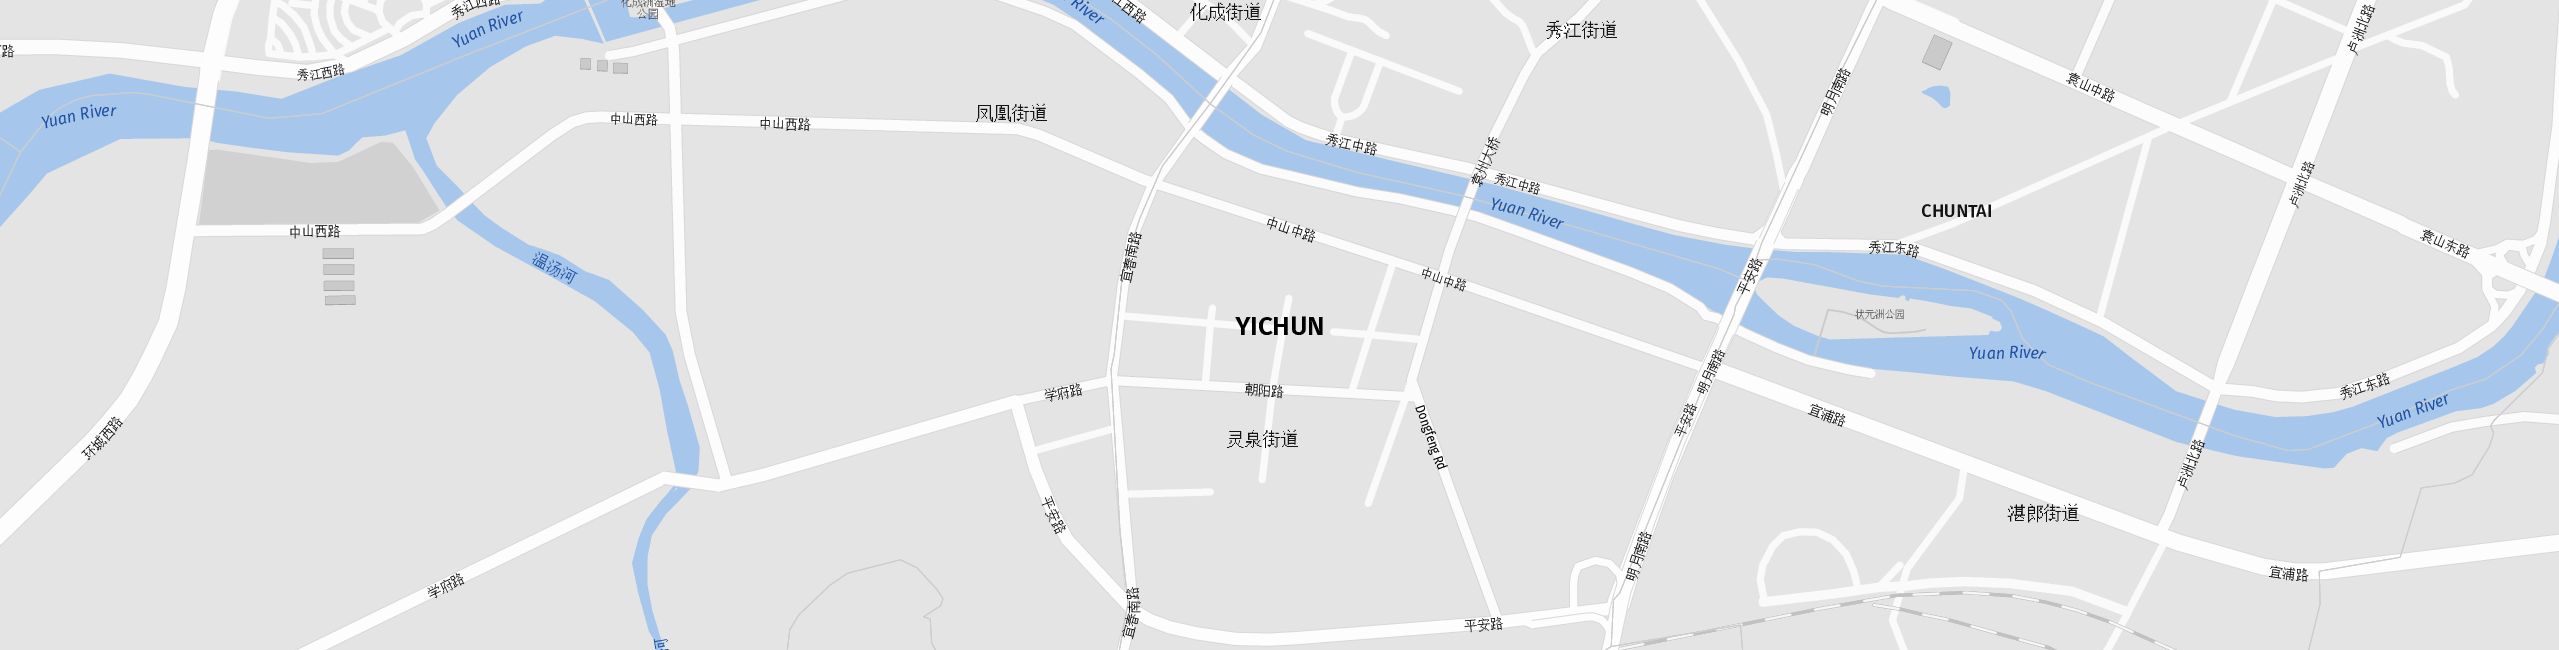 Stadtplan Yichun zum Downloaden.